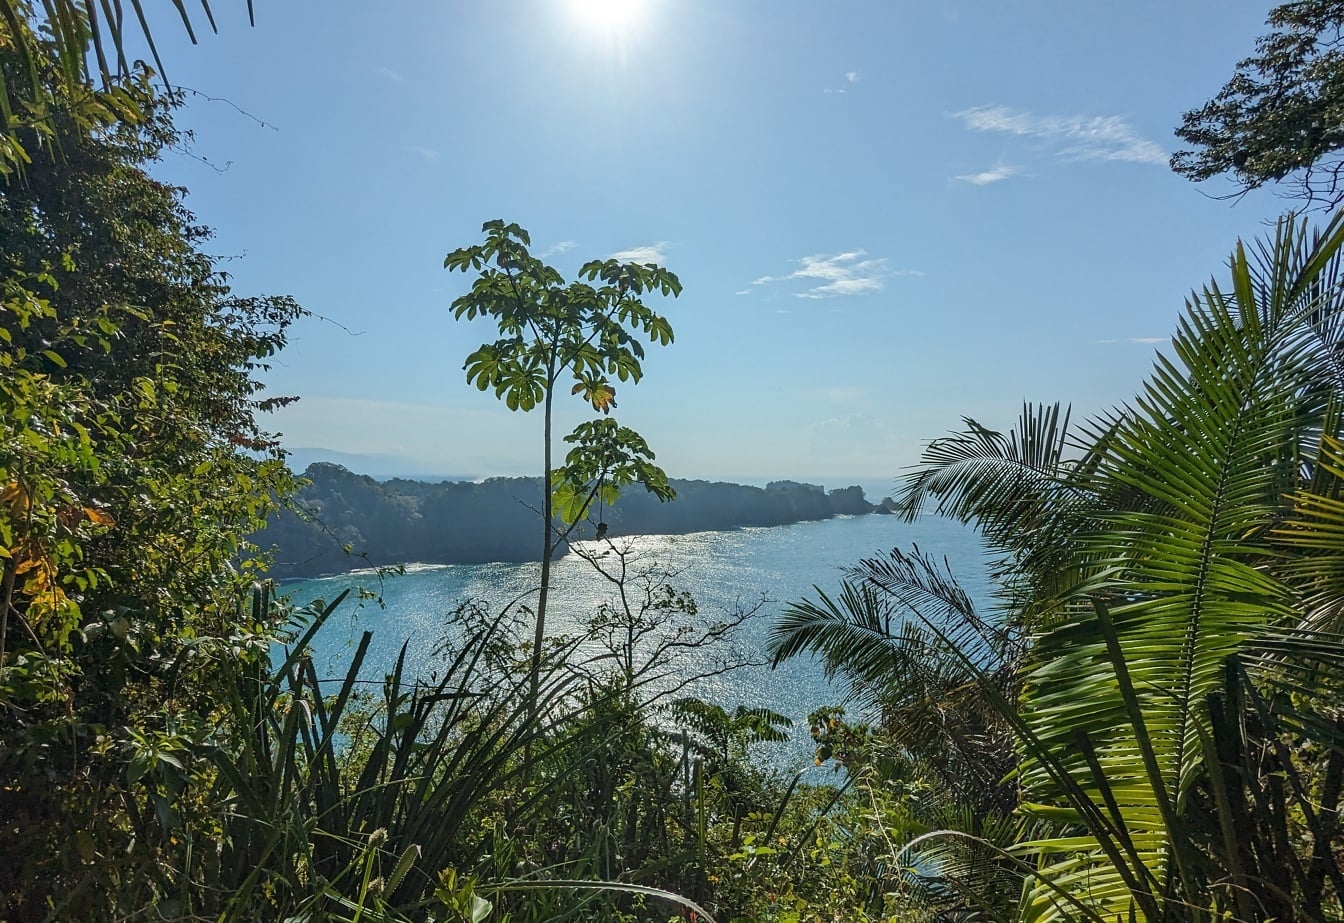 Panoramautsikt över en lagun från en kulle med tropiska träd och växter